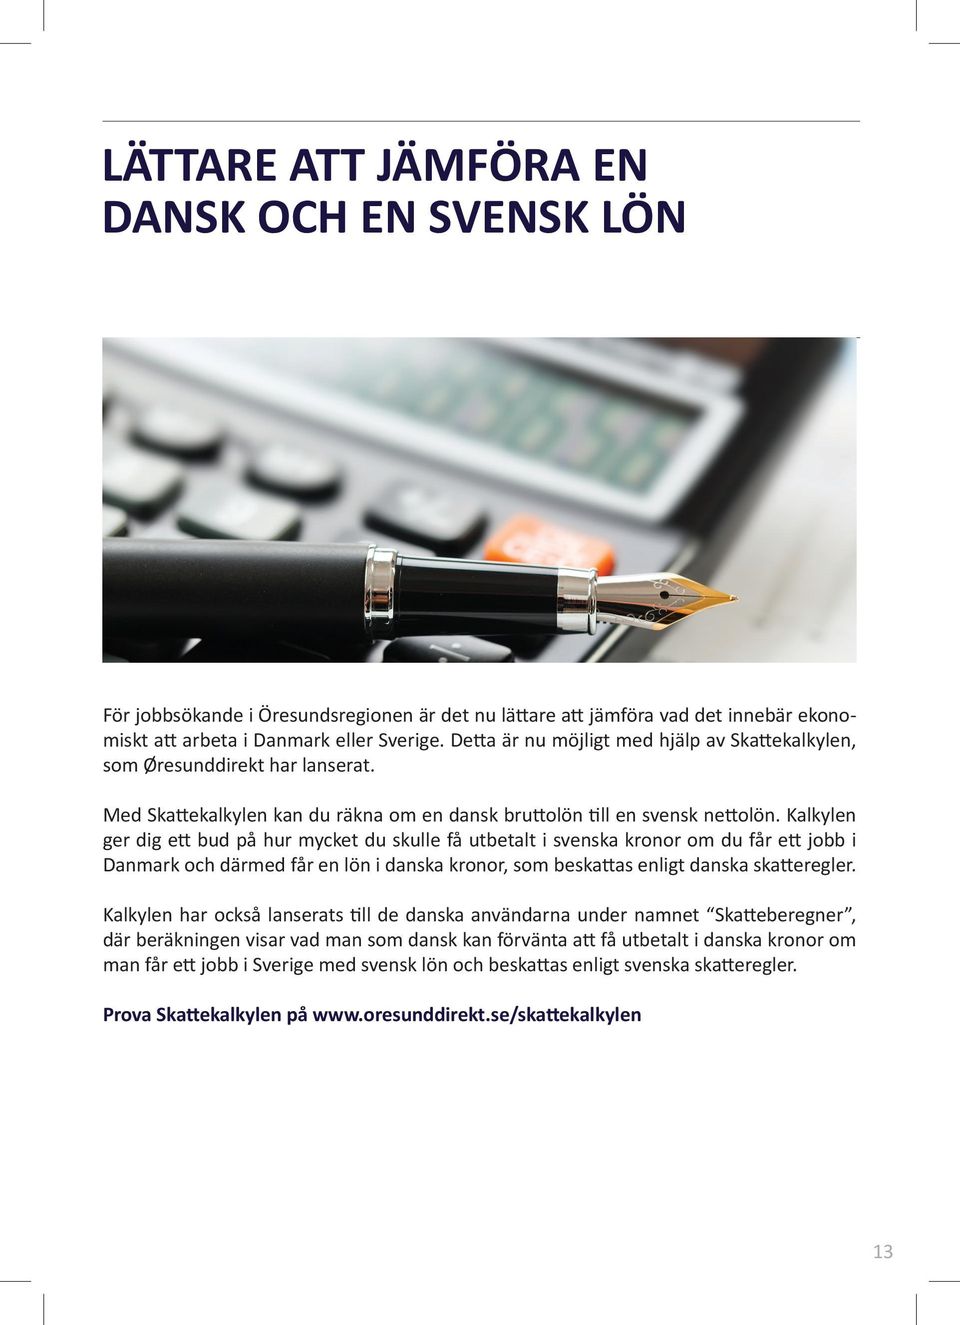 Kalkylen ger dig ett bud på hur mycket du skulle få utbetalt i svenska kronor om du får ett jobb i Danmark och därmed får en lön i danska kronor, som beskattas enligt danska skatteregler.